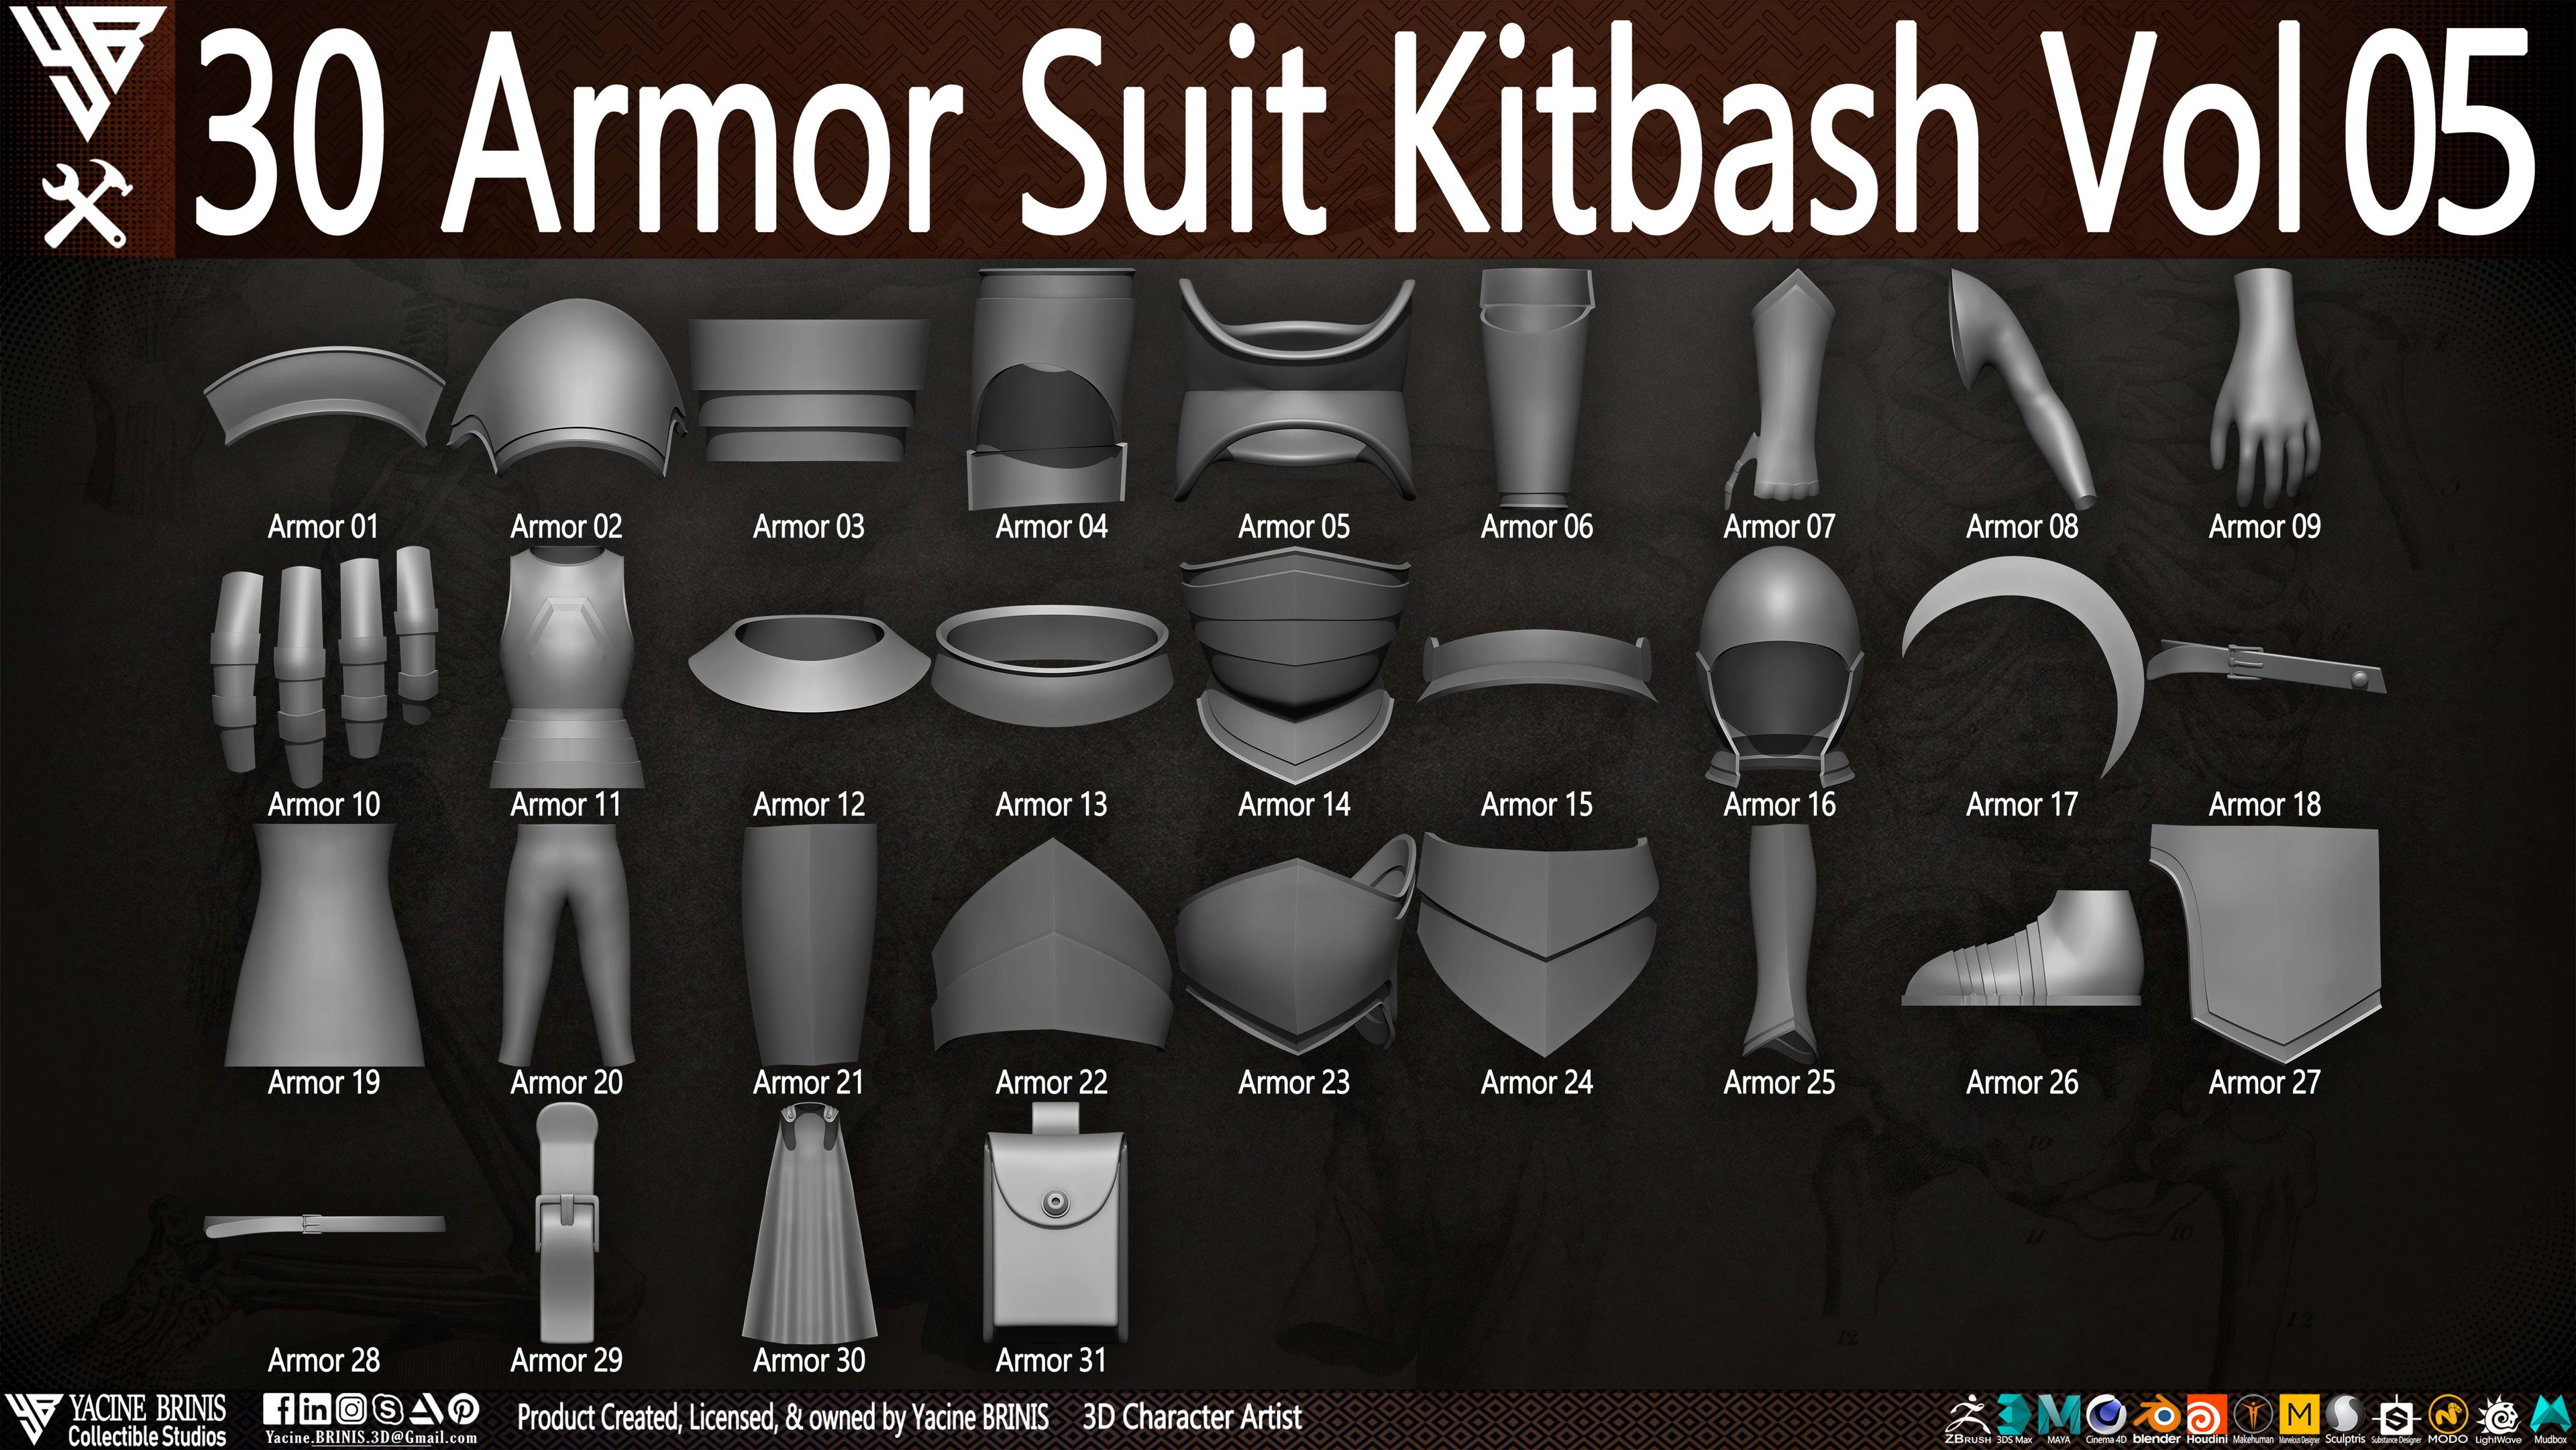 30 Armor Suit Kitbash By Yacine BRINIS Set 019